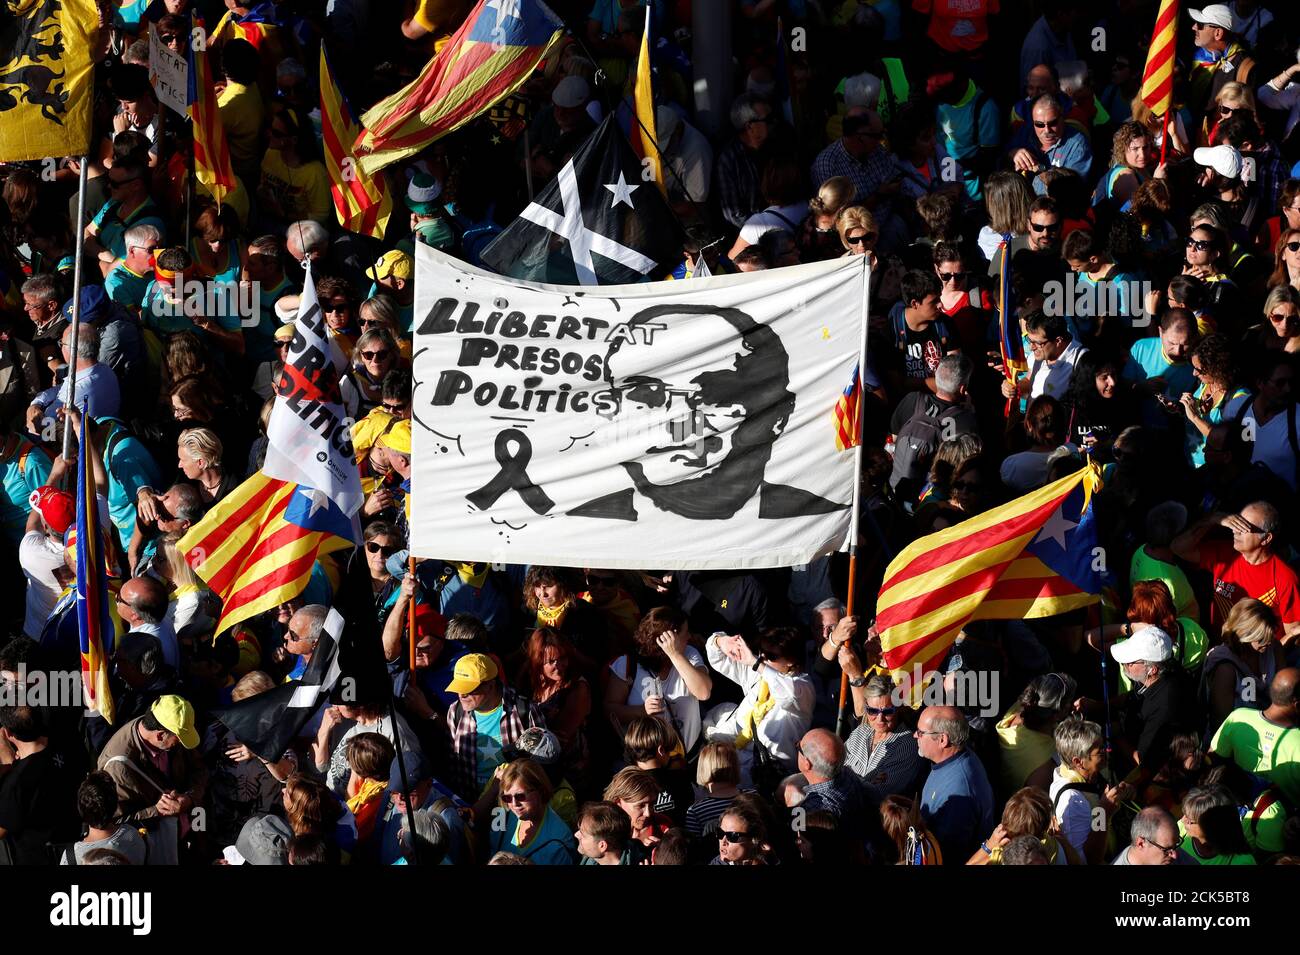 Katalanische Demonstranten, die sich für die Unabhängigkeit einsetzen, halten ein Transparent mit der Aufschrift "Freiheit für politische Gefangene" während eines Protestes zur Freilassung inhaftierter Separatistenführer in Barcelona, Spanien, am 26. Oktober 2019. REUTERS/Albert Gea Stockfoto